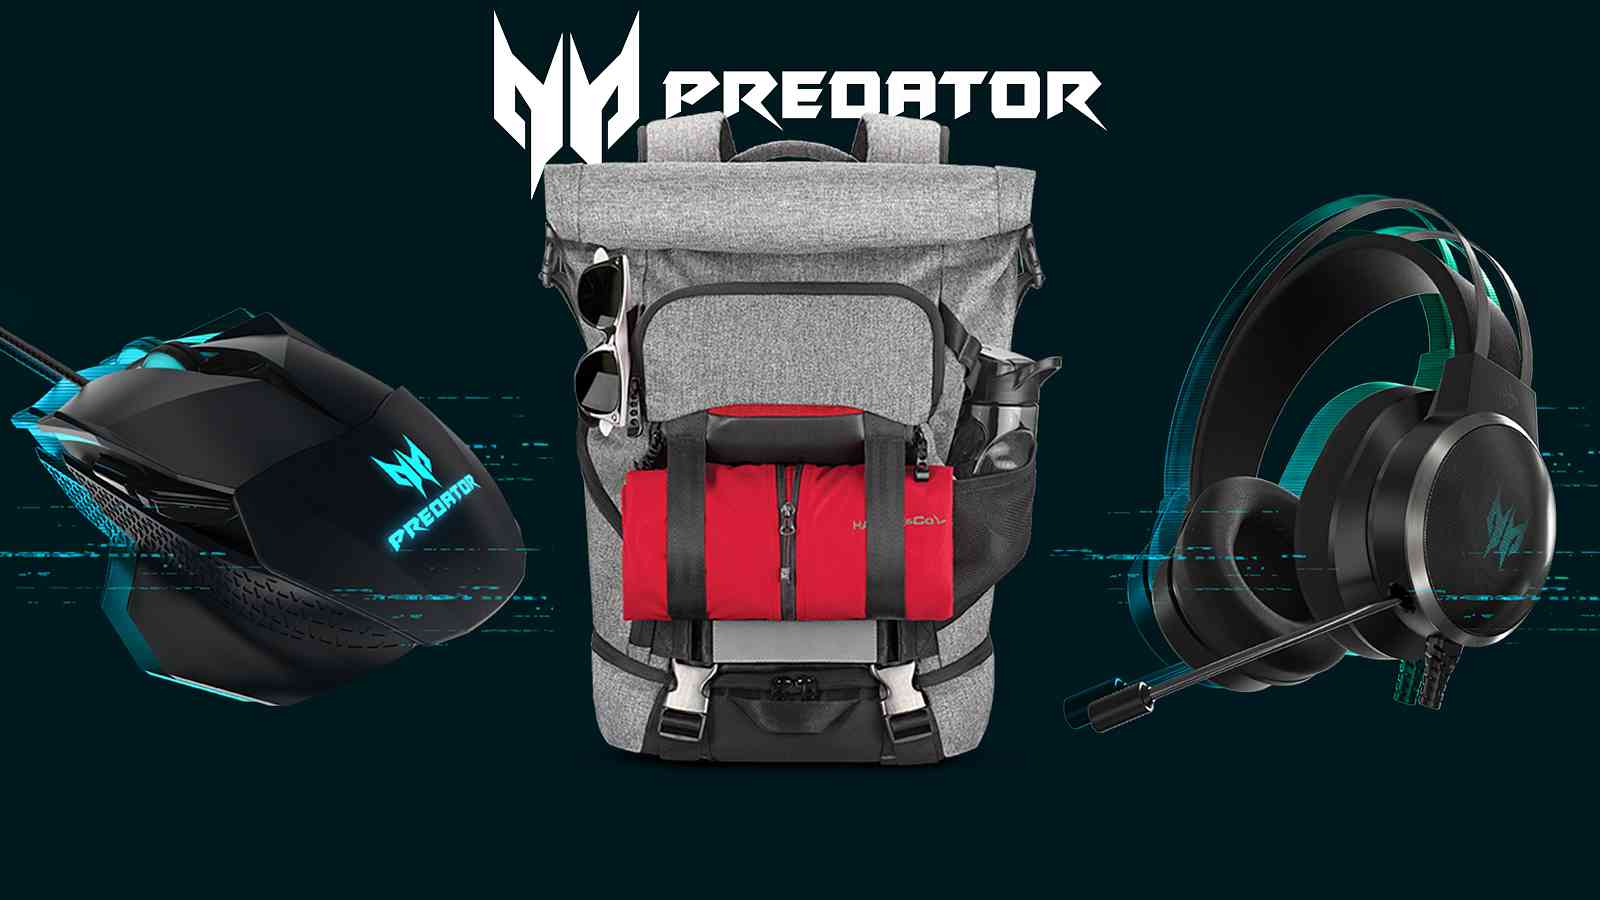 Seznamte se s Predator doplňky pro váš desktop nebo notebook